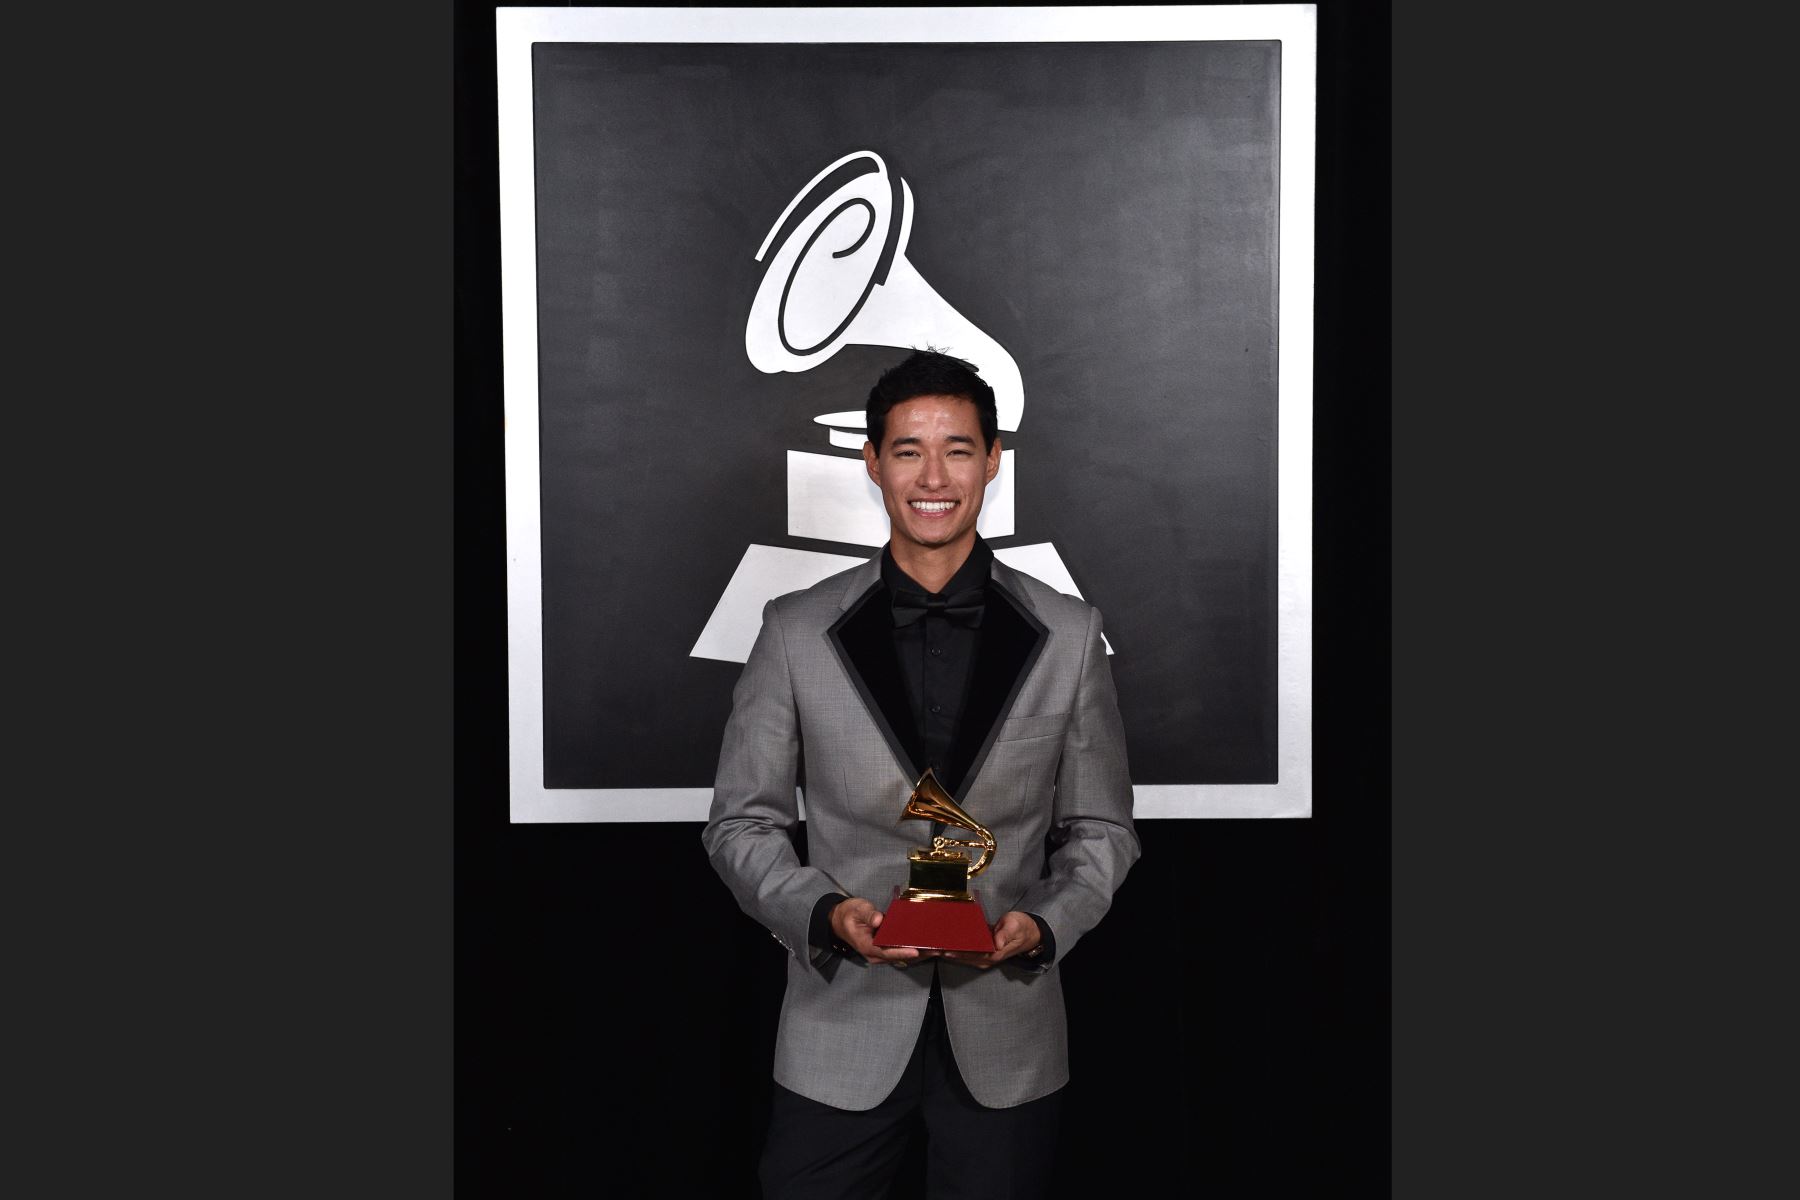 Tony Succar recibió el  premio para el Mejor Álbum de Salsa y Productor del Año en el escenario en la Ceremonia de estreno durante la 20a entrega anual de los Premios GRAMMY Latinos en el MGM Grand Garden Arena el 14 de noviembre de 2019.Foto: AFP